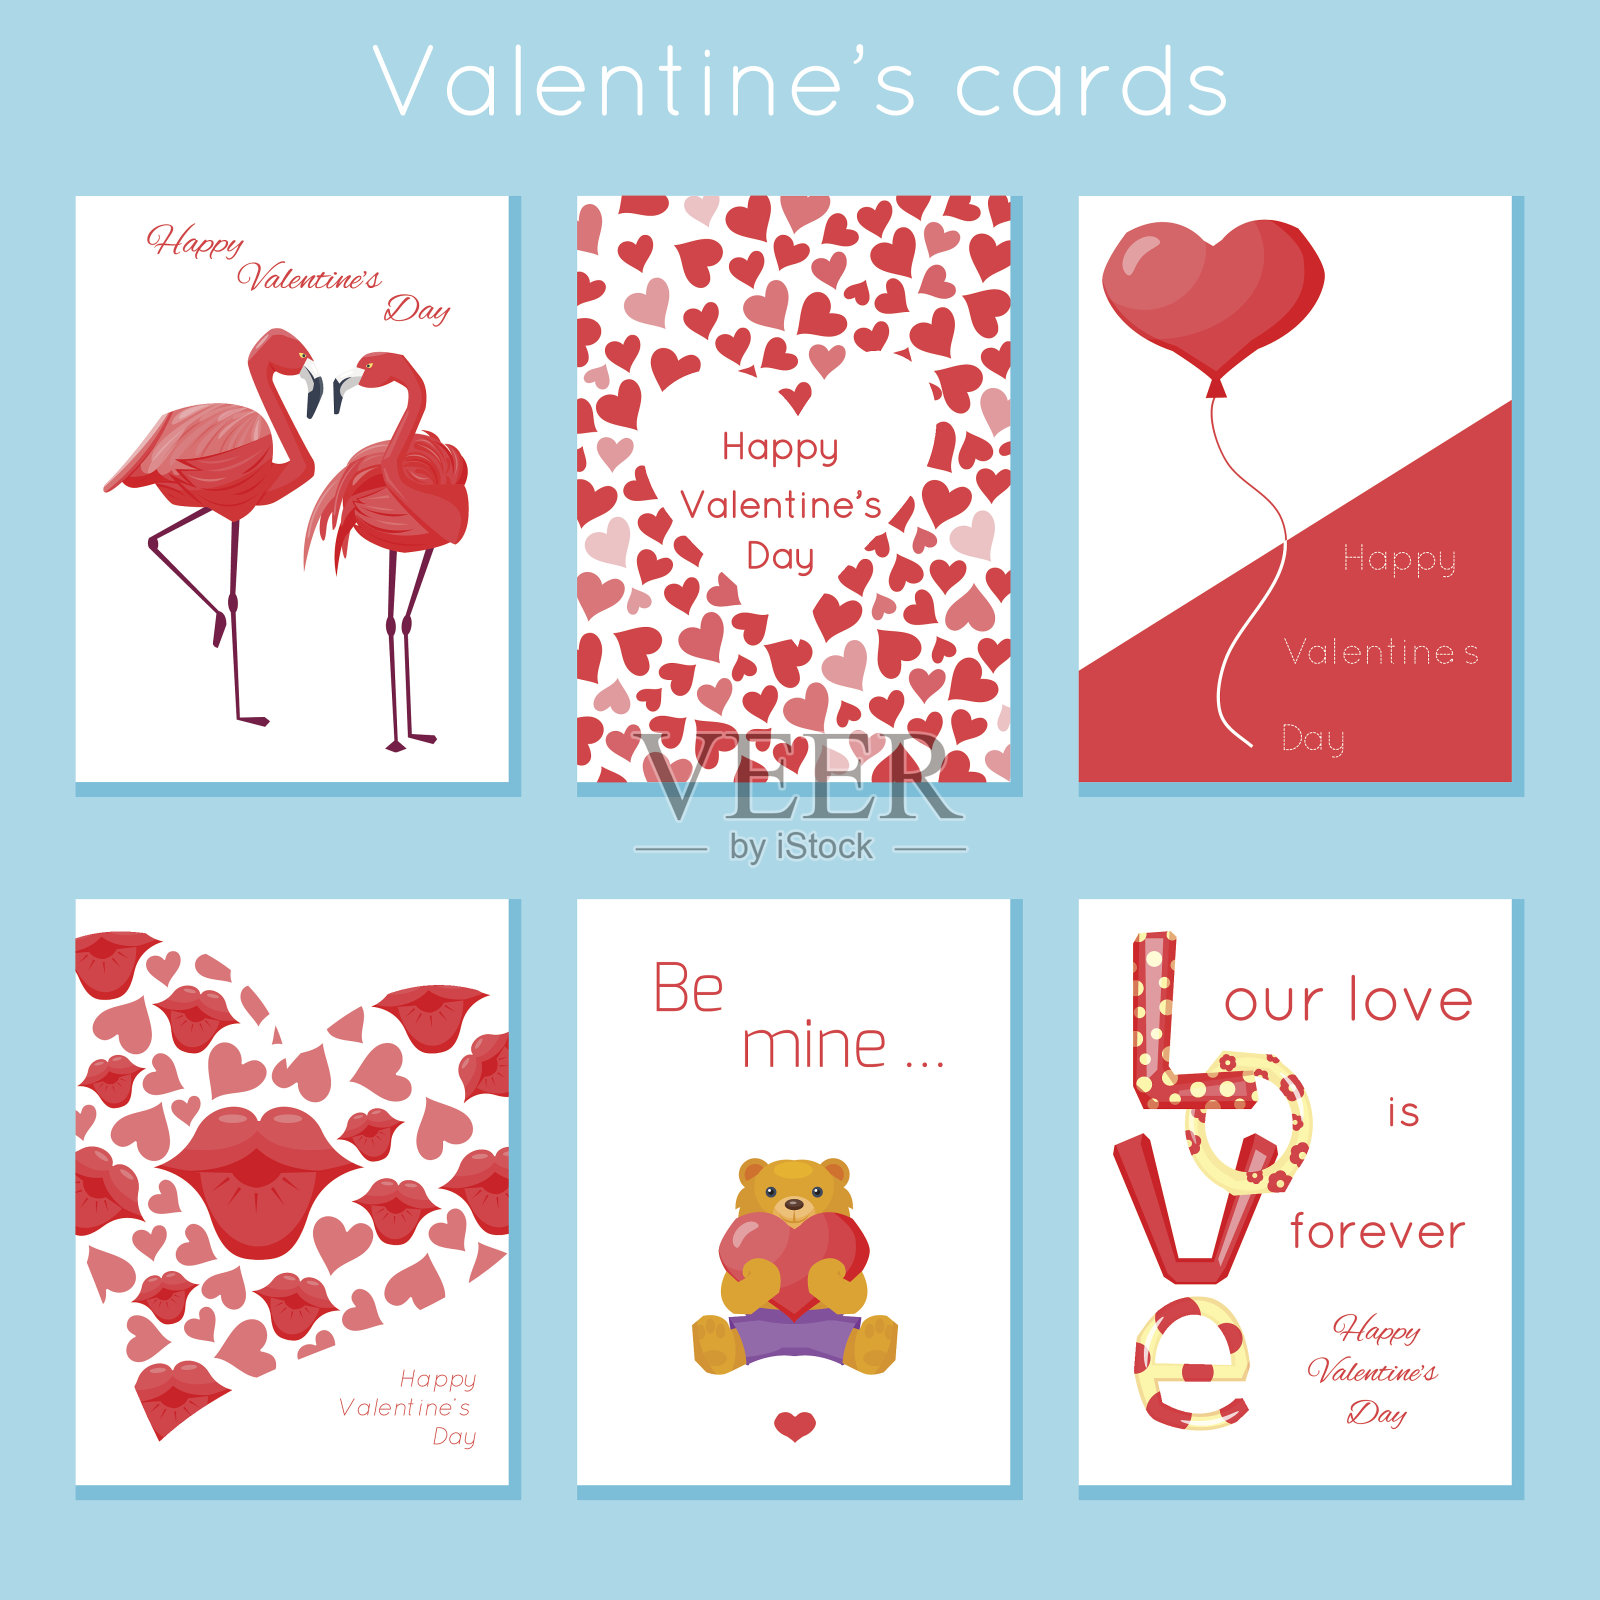 一套浪漫的现代情人节卡片设计模板素材